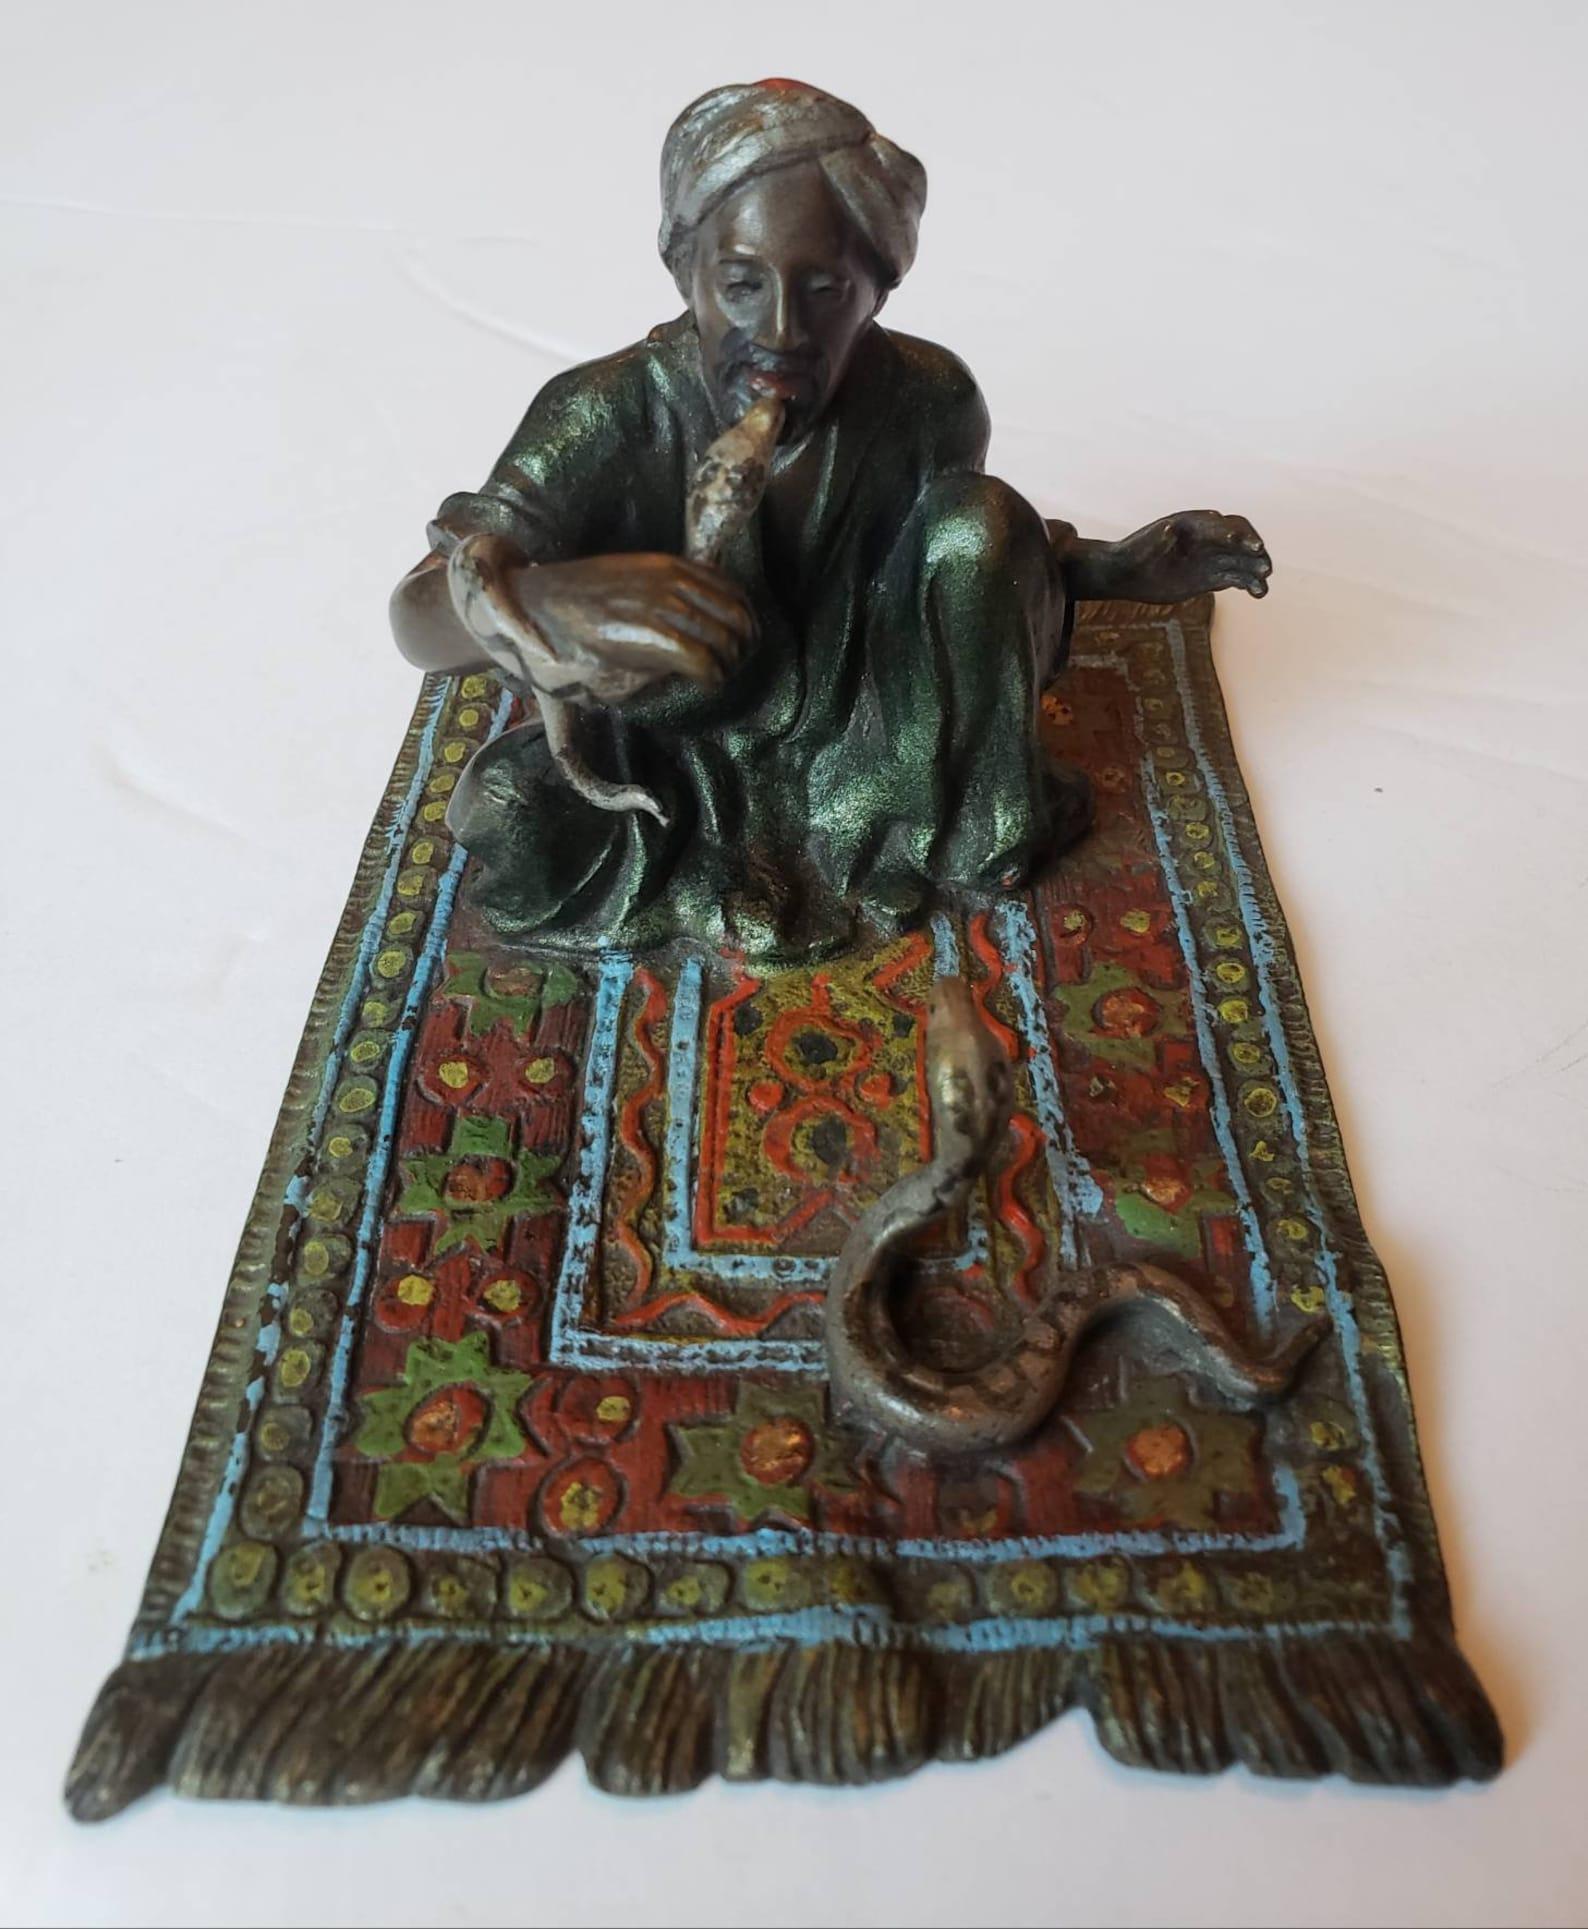 Une très convoitée figure Franz Bergmann en bronze peint à froid de Vienne représentant un Arabe charmeur de serpents sur un tapis aux couleurs et motifs séduisants. Un bras relevé pour tenir l'aiguille qui conserve encore la ficelle d'origine.